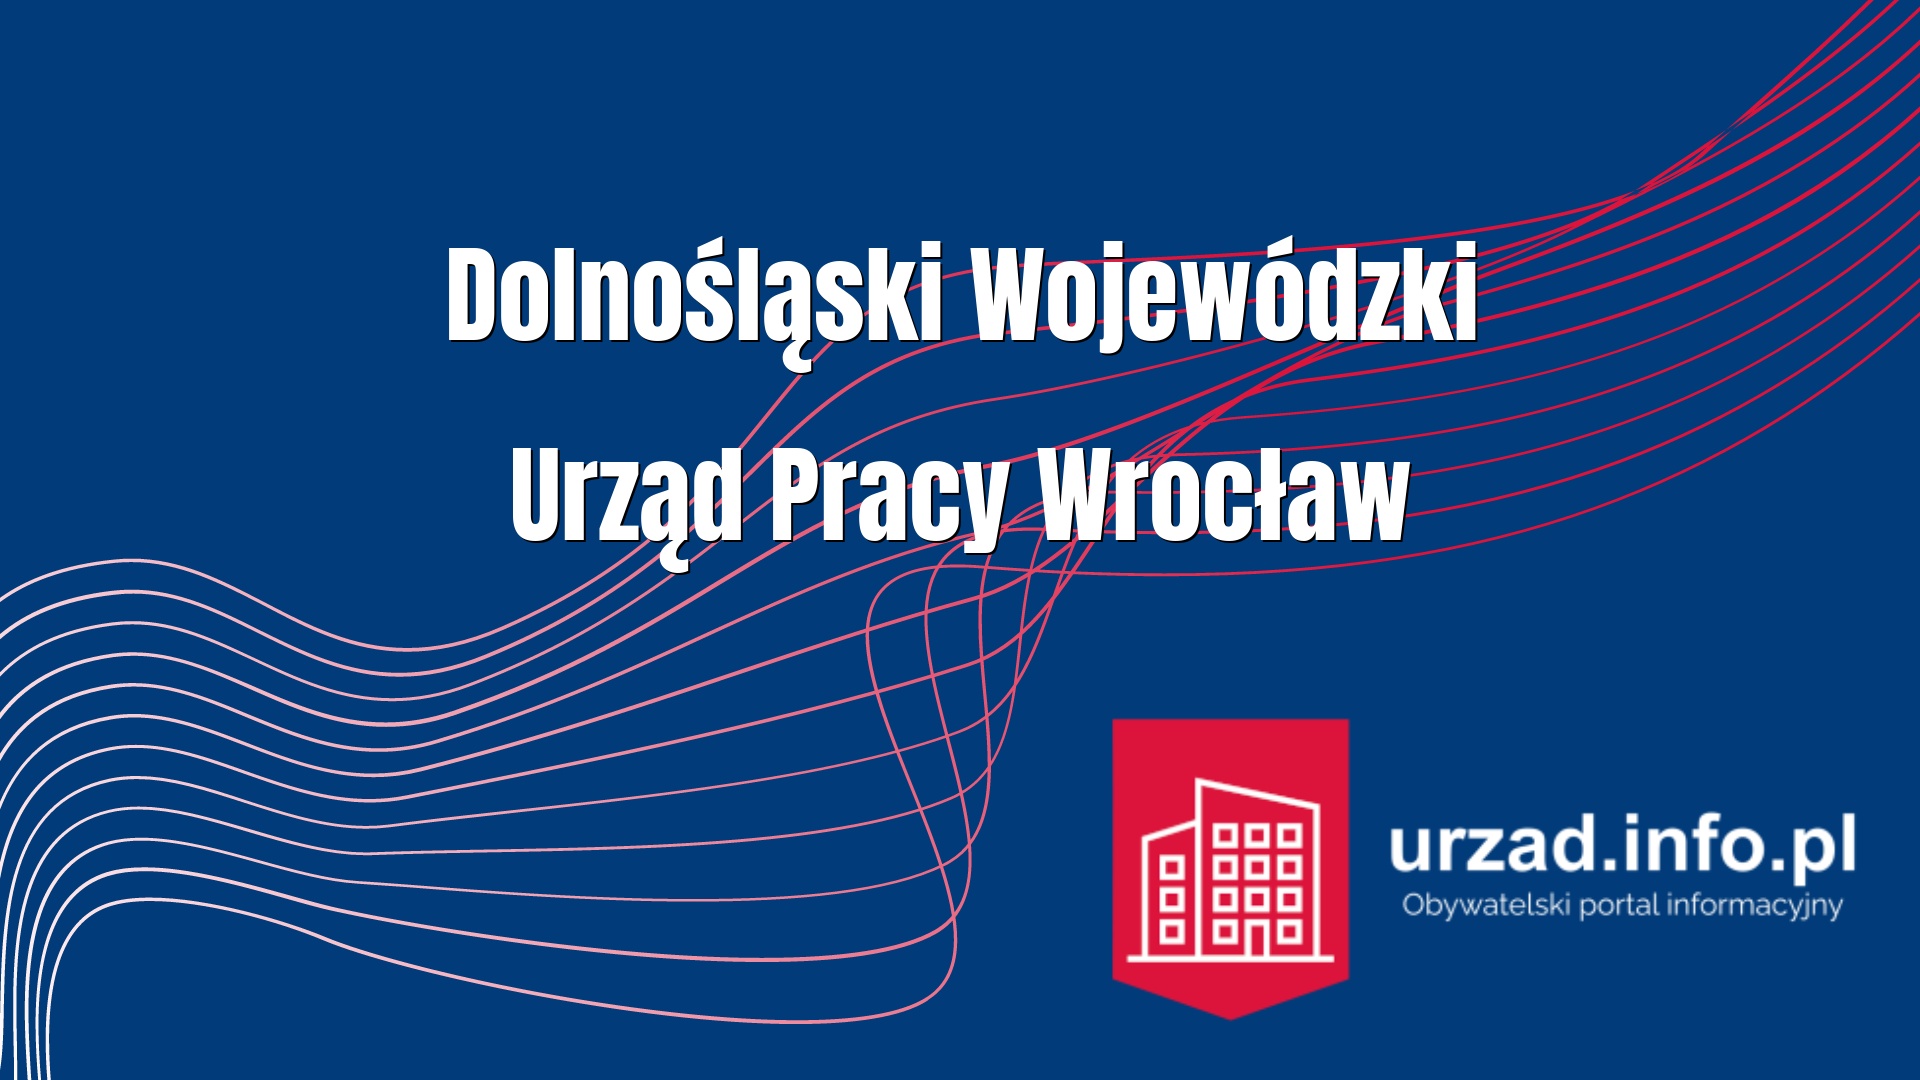 Dolnośląski Wojewódzki Urząd Pracy Wrocław